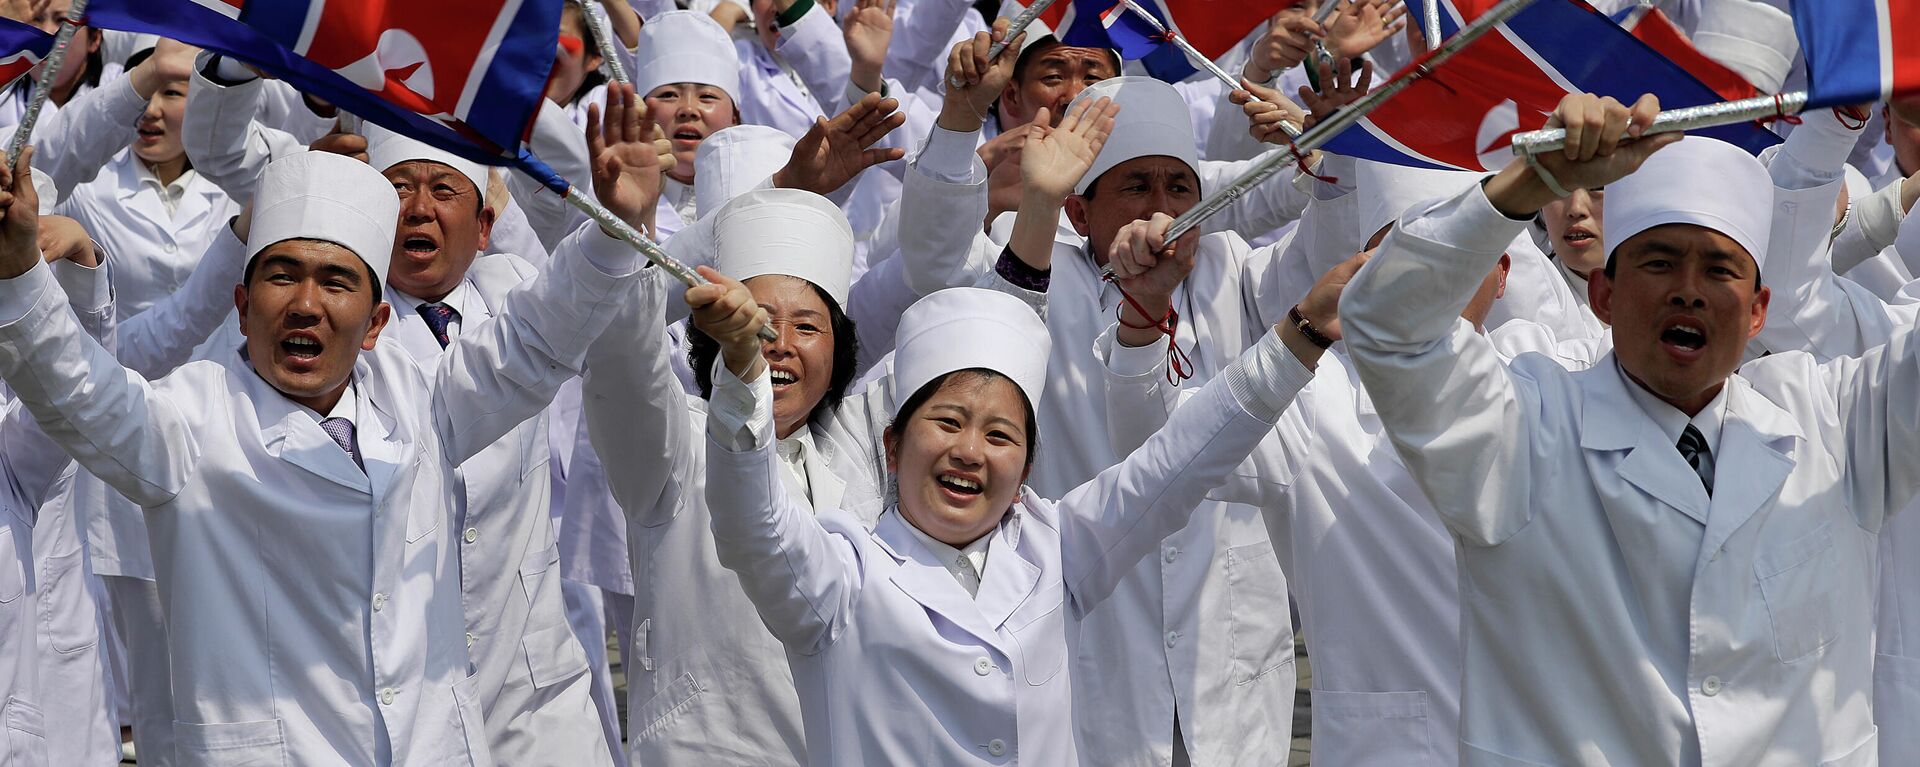 Médicos norcoreanos con banderas nacionales - Sputnik Mundo, 1920, 19.05.2021